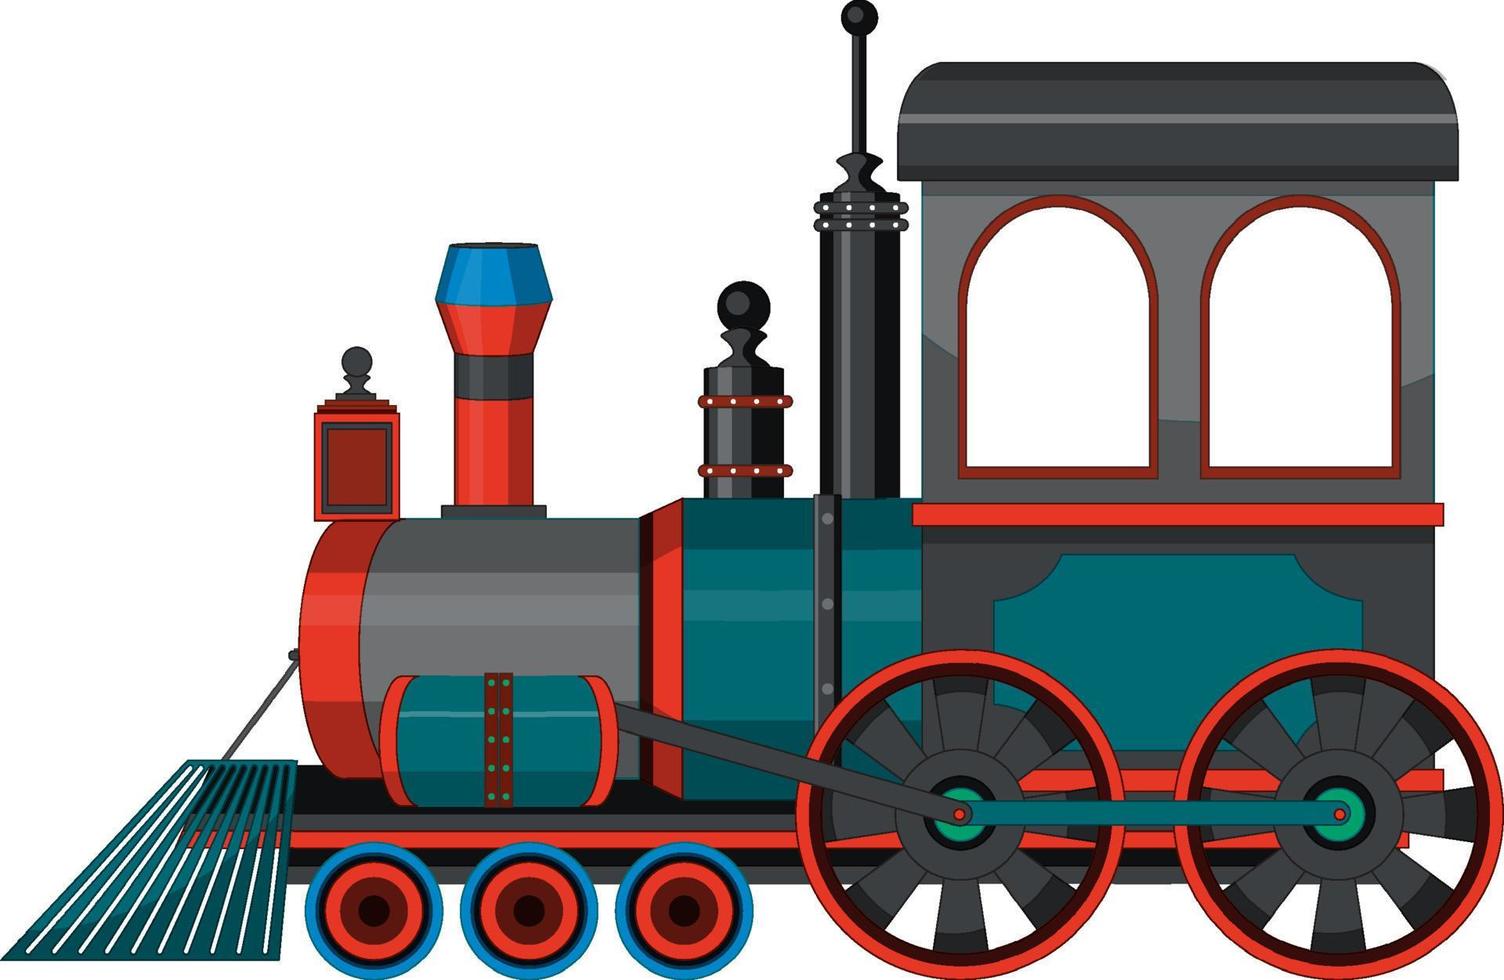 locomotora de vapor tren estilo vintage vector